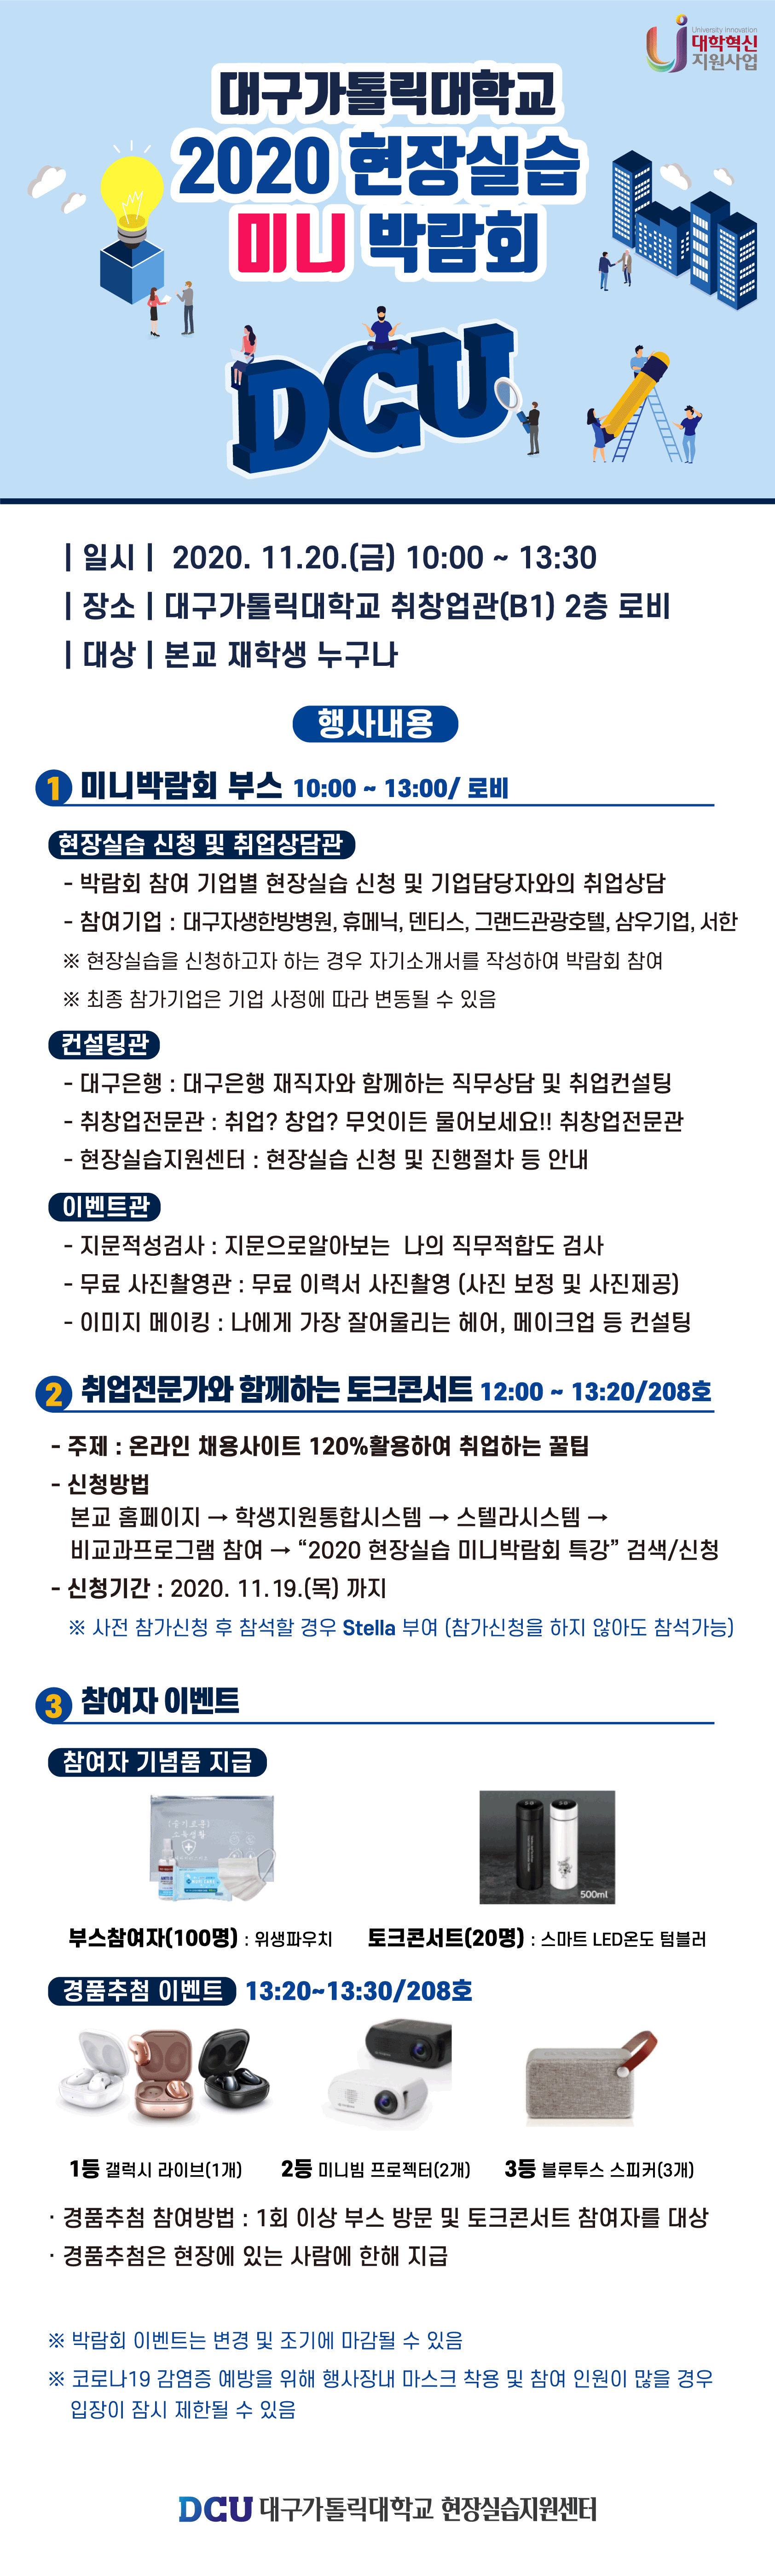 [혁신] 2020 현장실습 미니 박람회 개최 안내